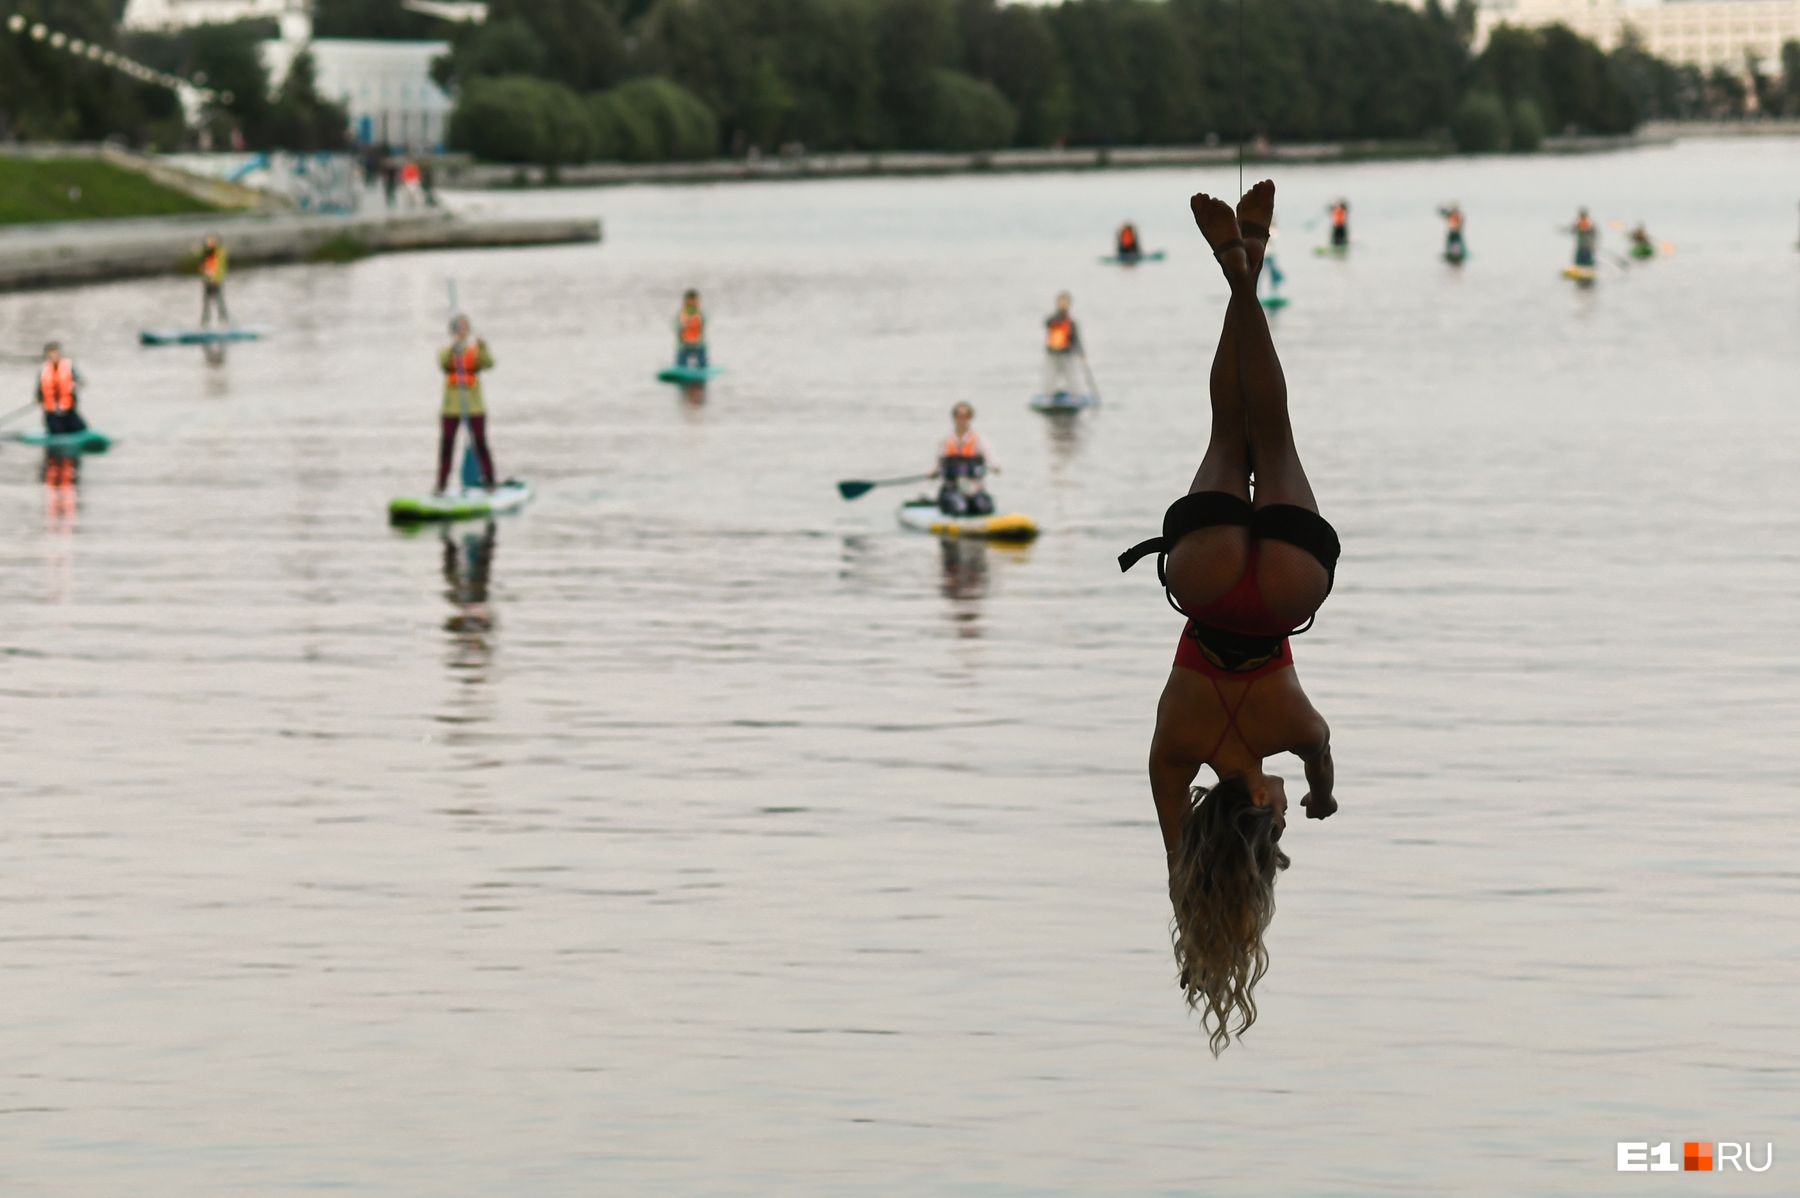 Екатеринбургские танцовщицы устроили необычный перформанс под Макаровским мостом